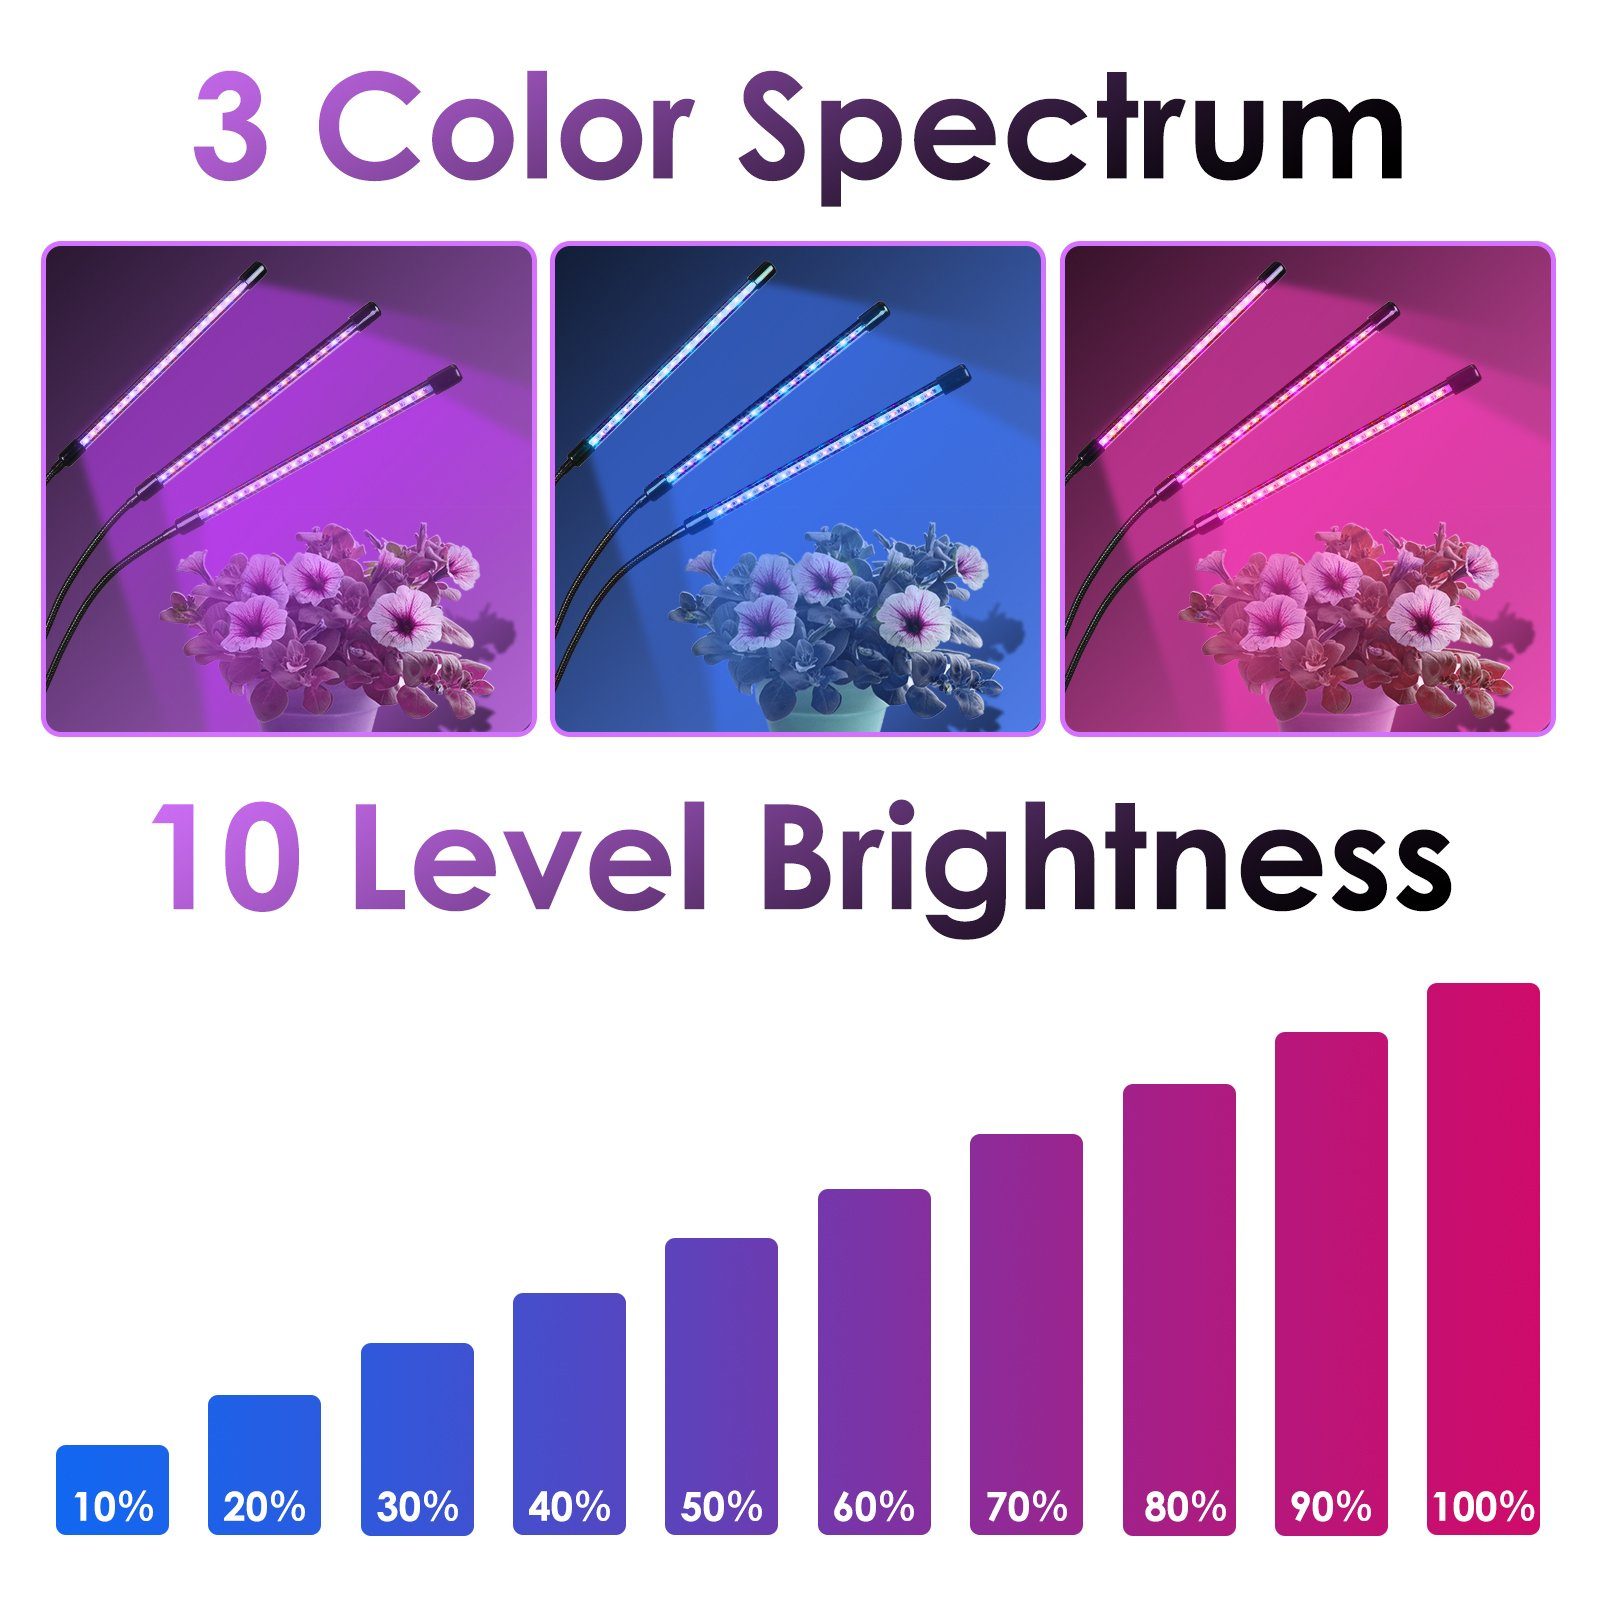 Lospitch Pflanzenlampe Light Grow Voll mit LEDS Licht Helligkeitsstufen Schreibtischclip, Modus, Verstellbarer 3 Spektrum mit 60 10 Schwanenhals